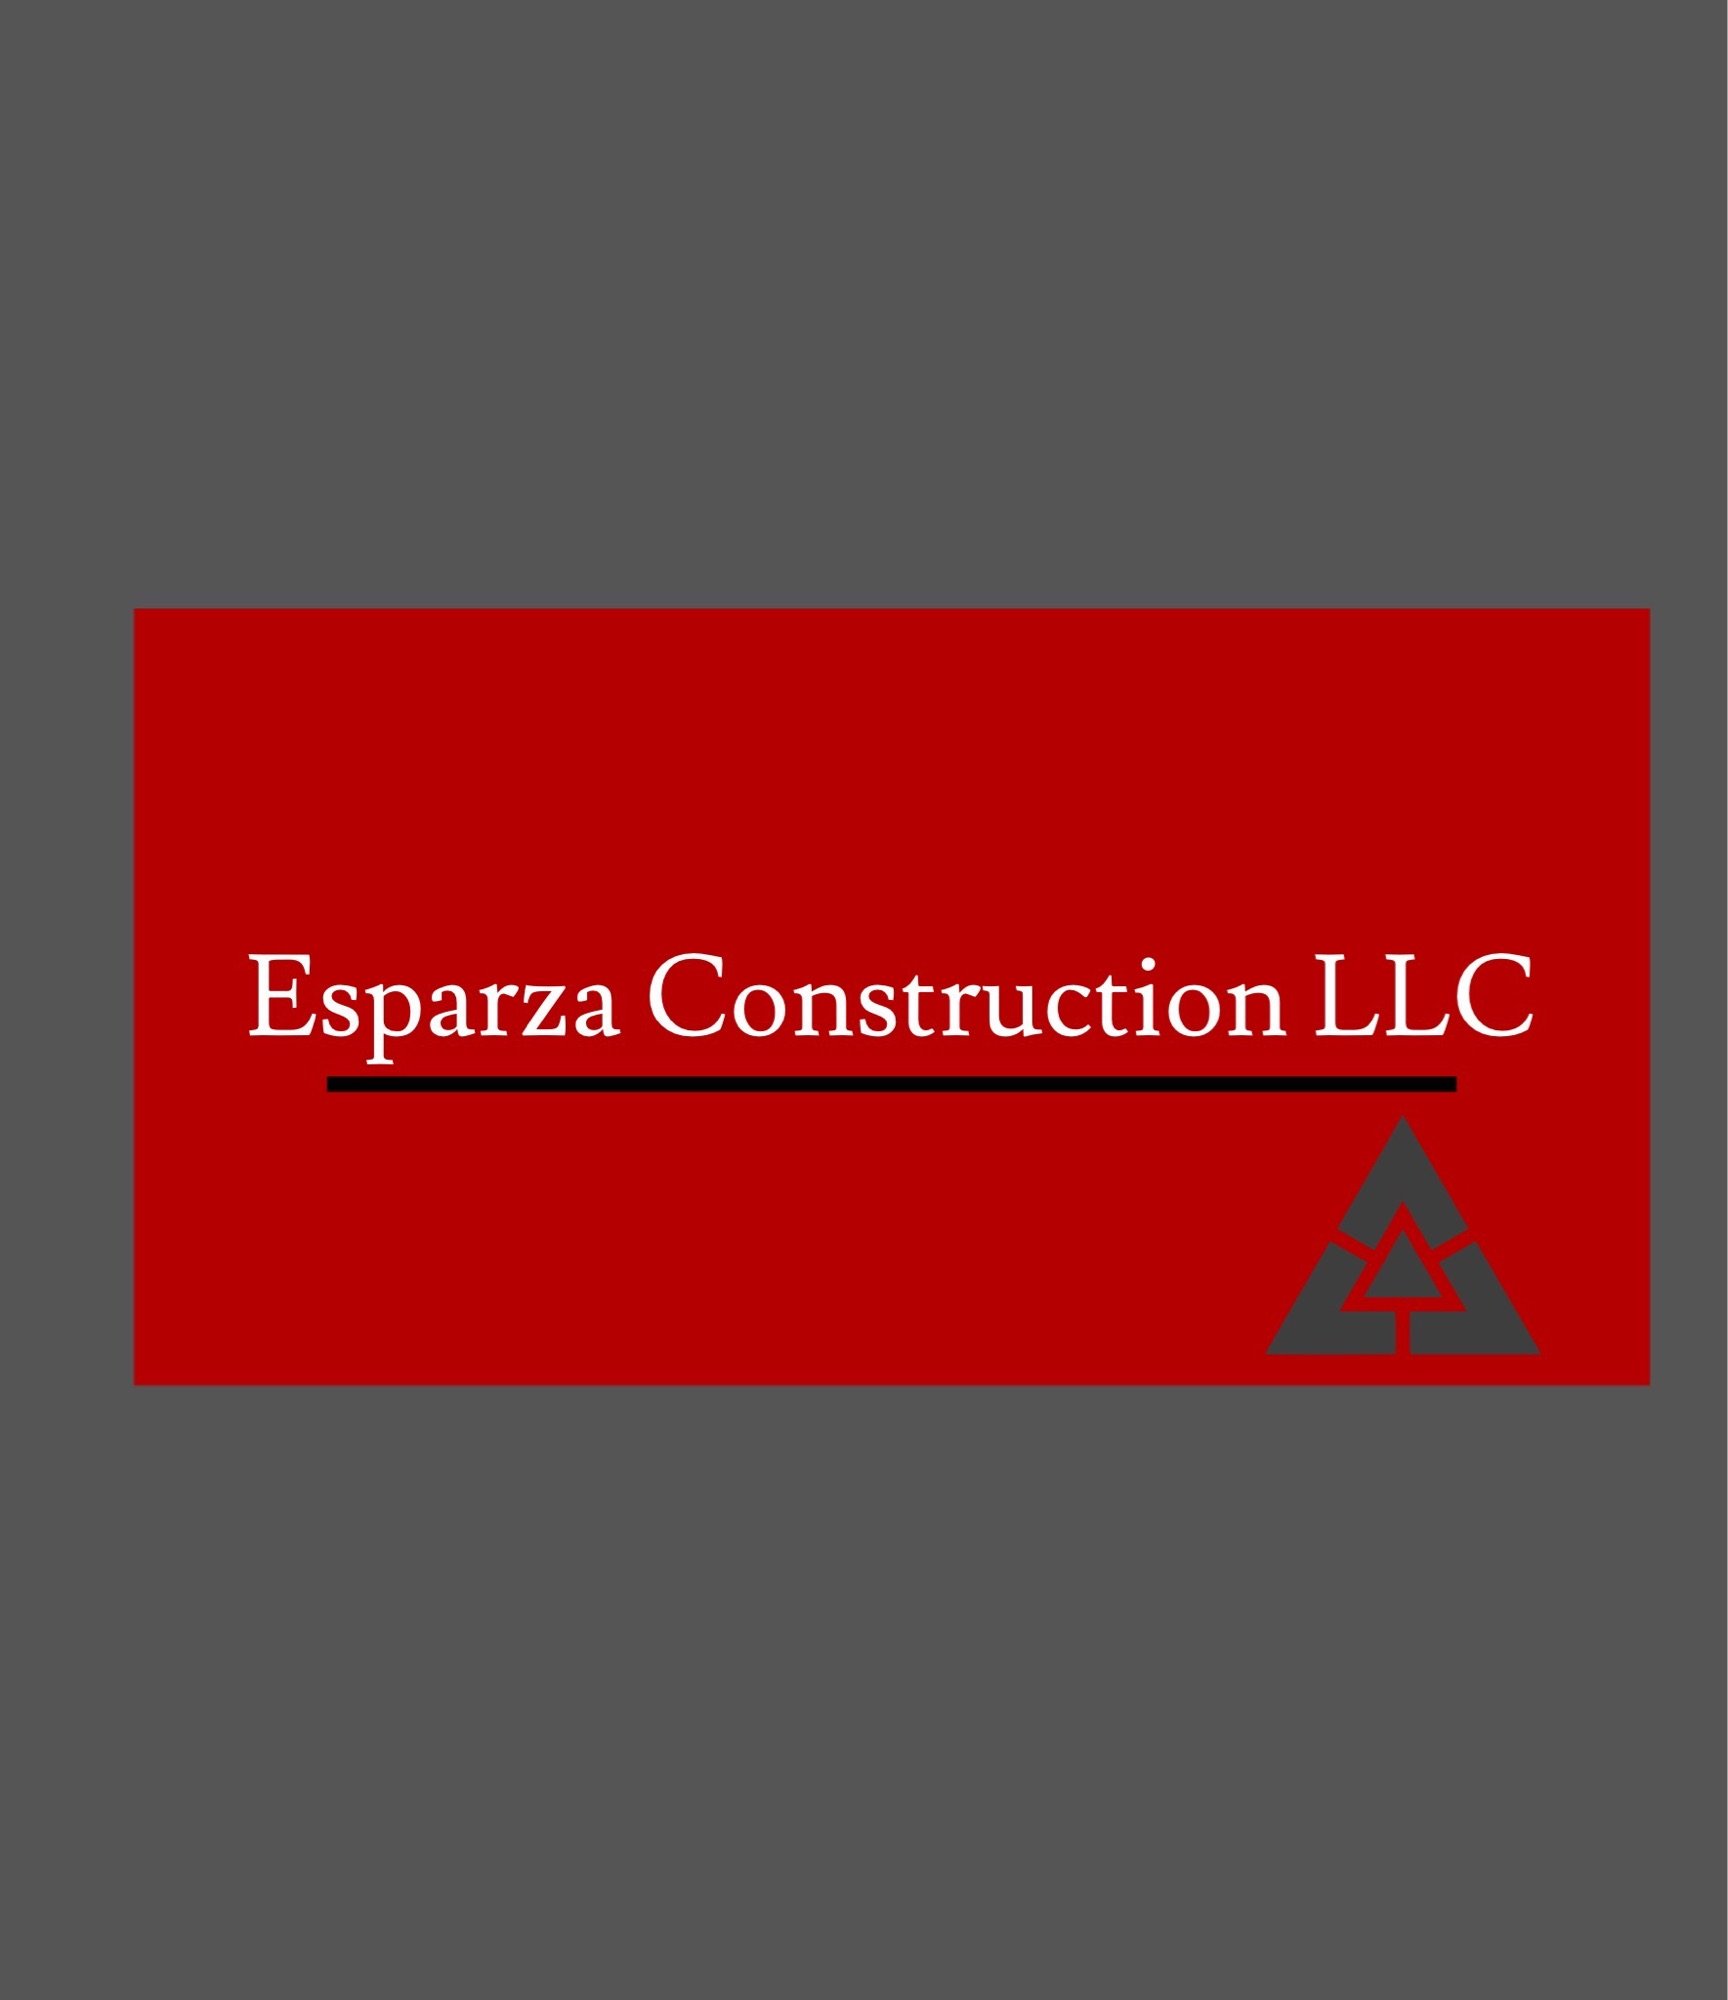 Esparza Construction Logo